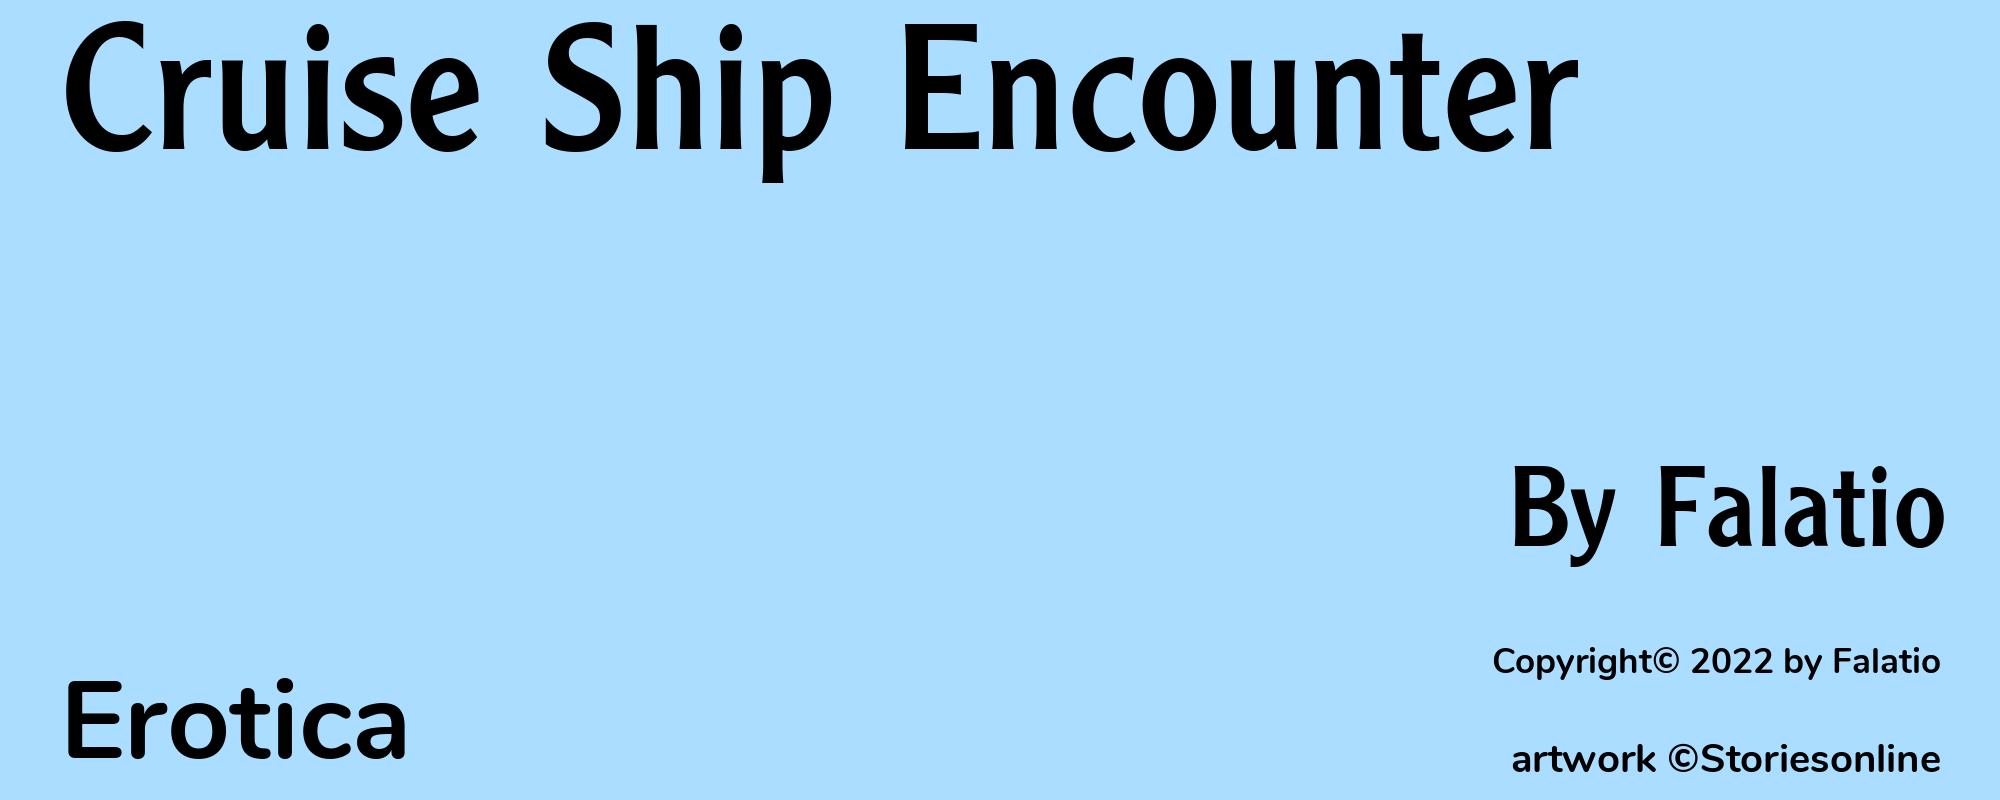 Cruise Ship Encounter - Cover